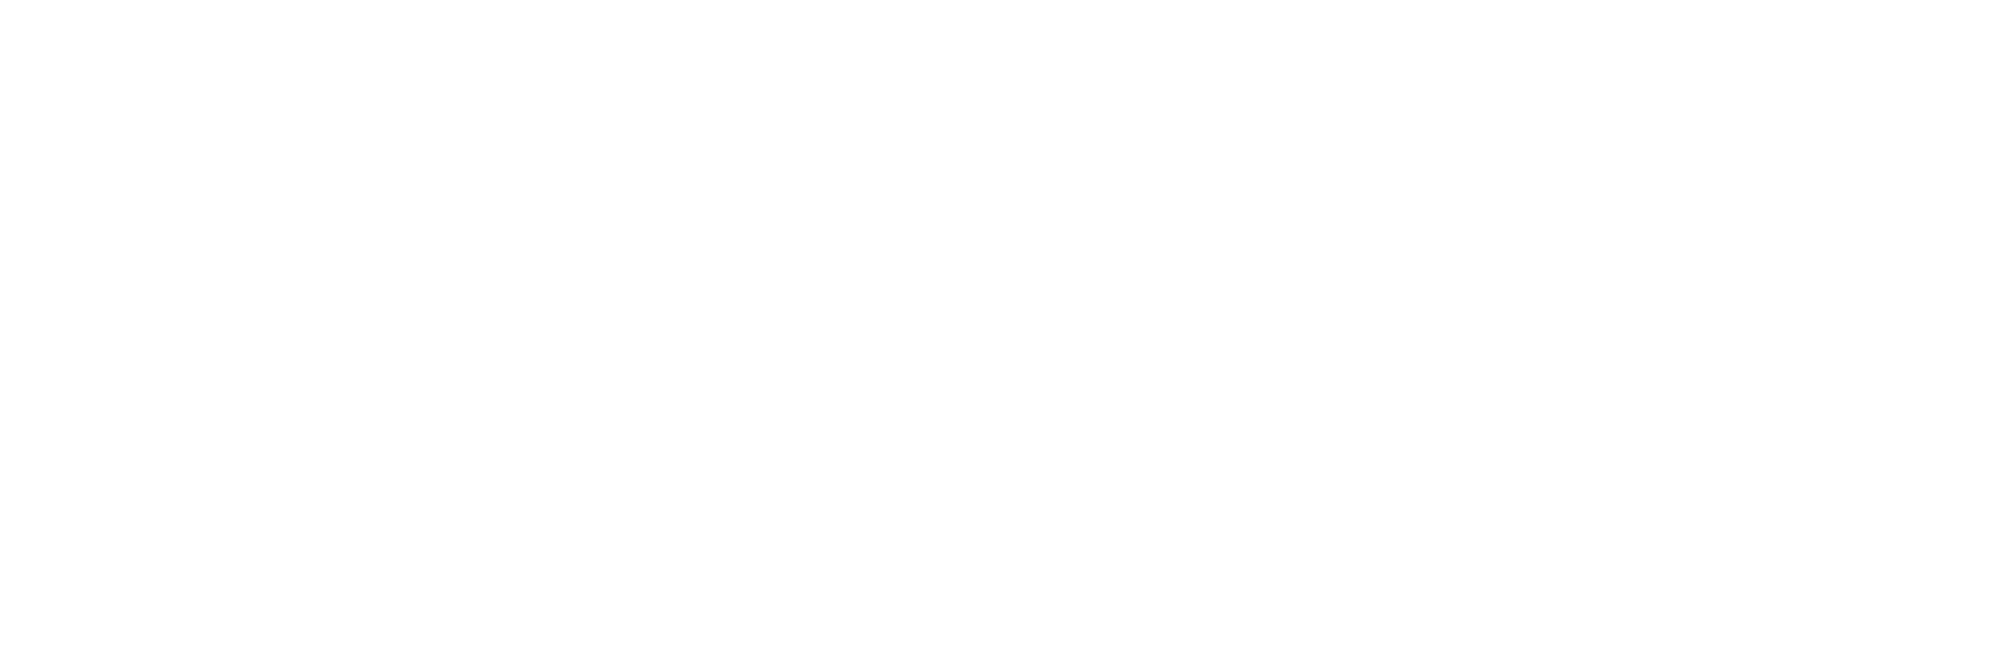 Würth_Weißgrau